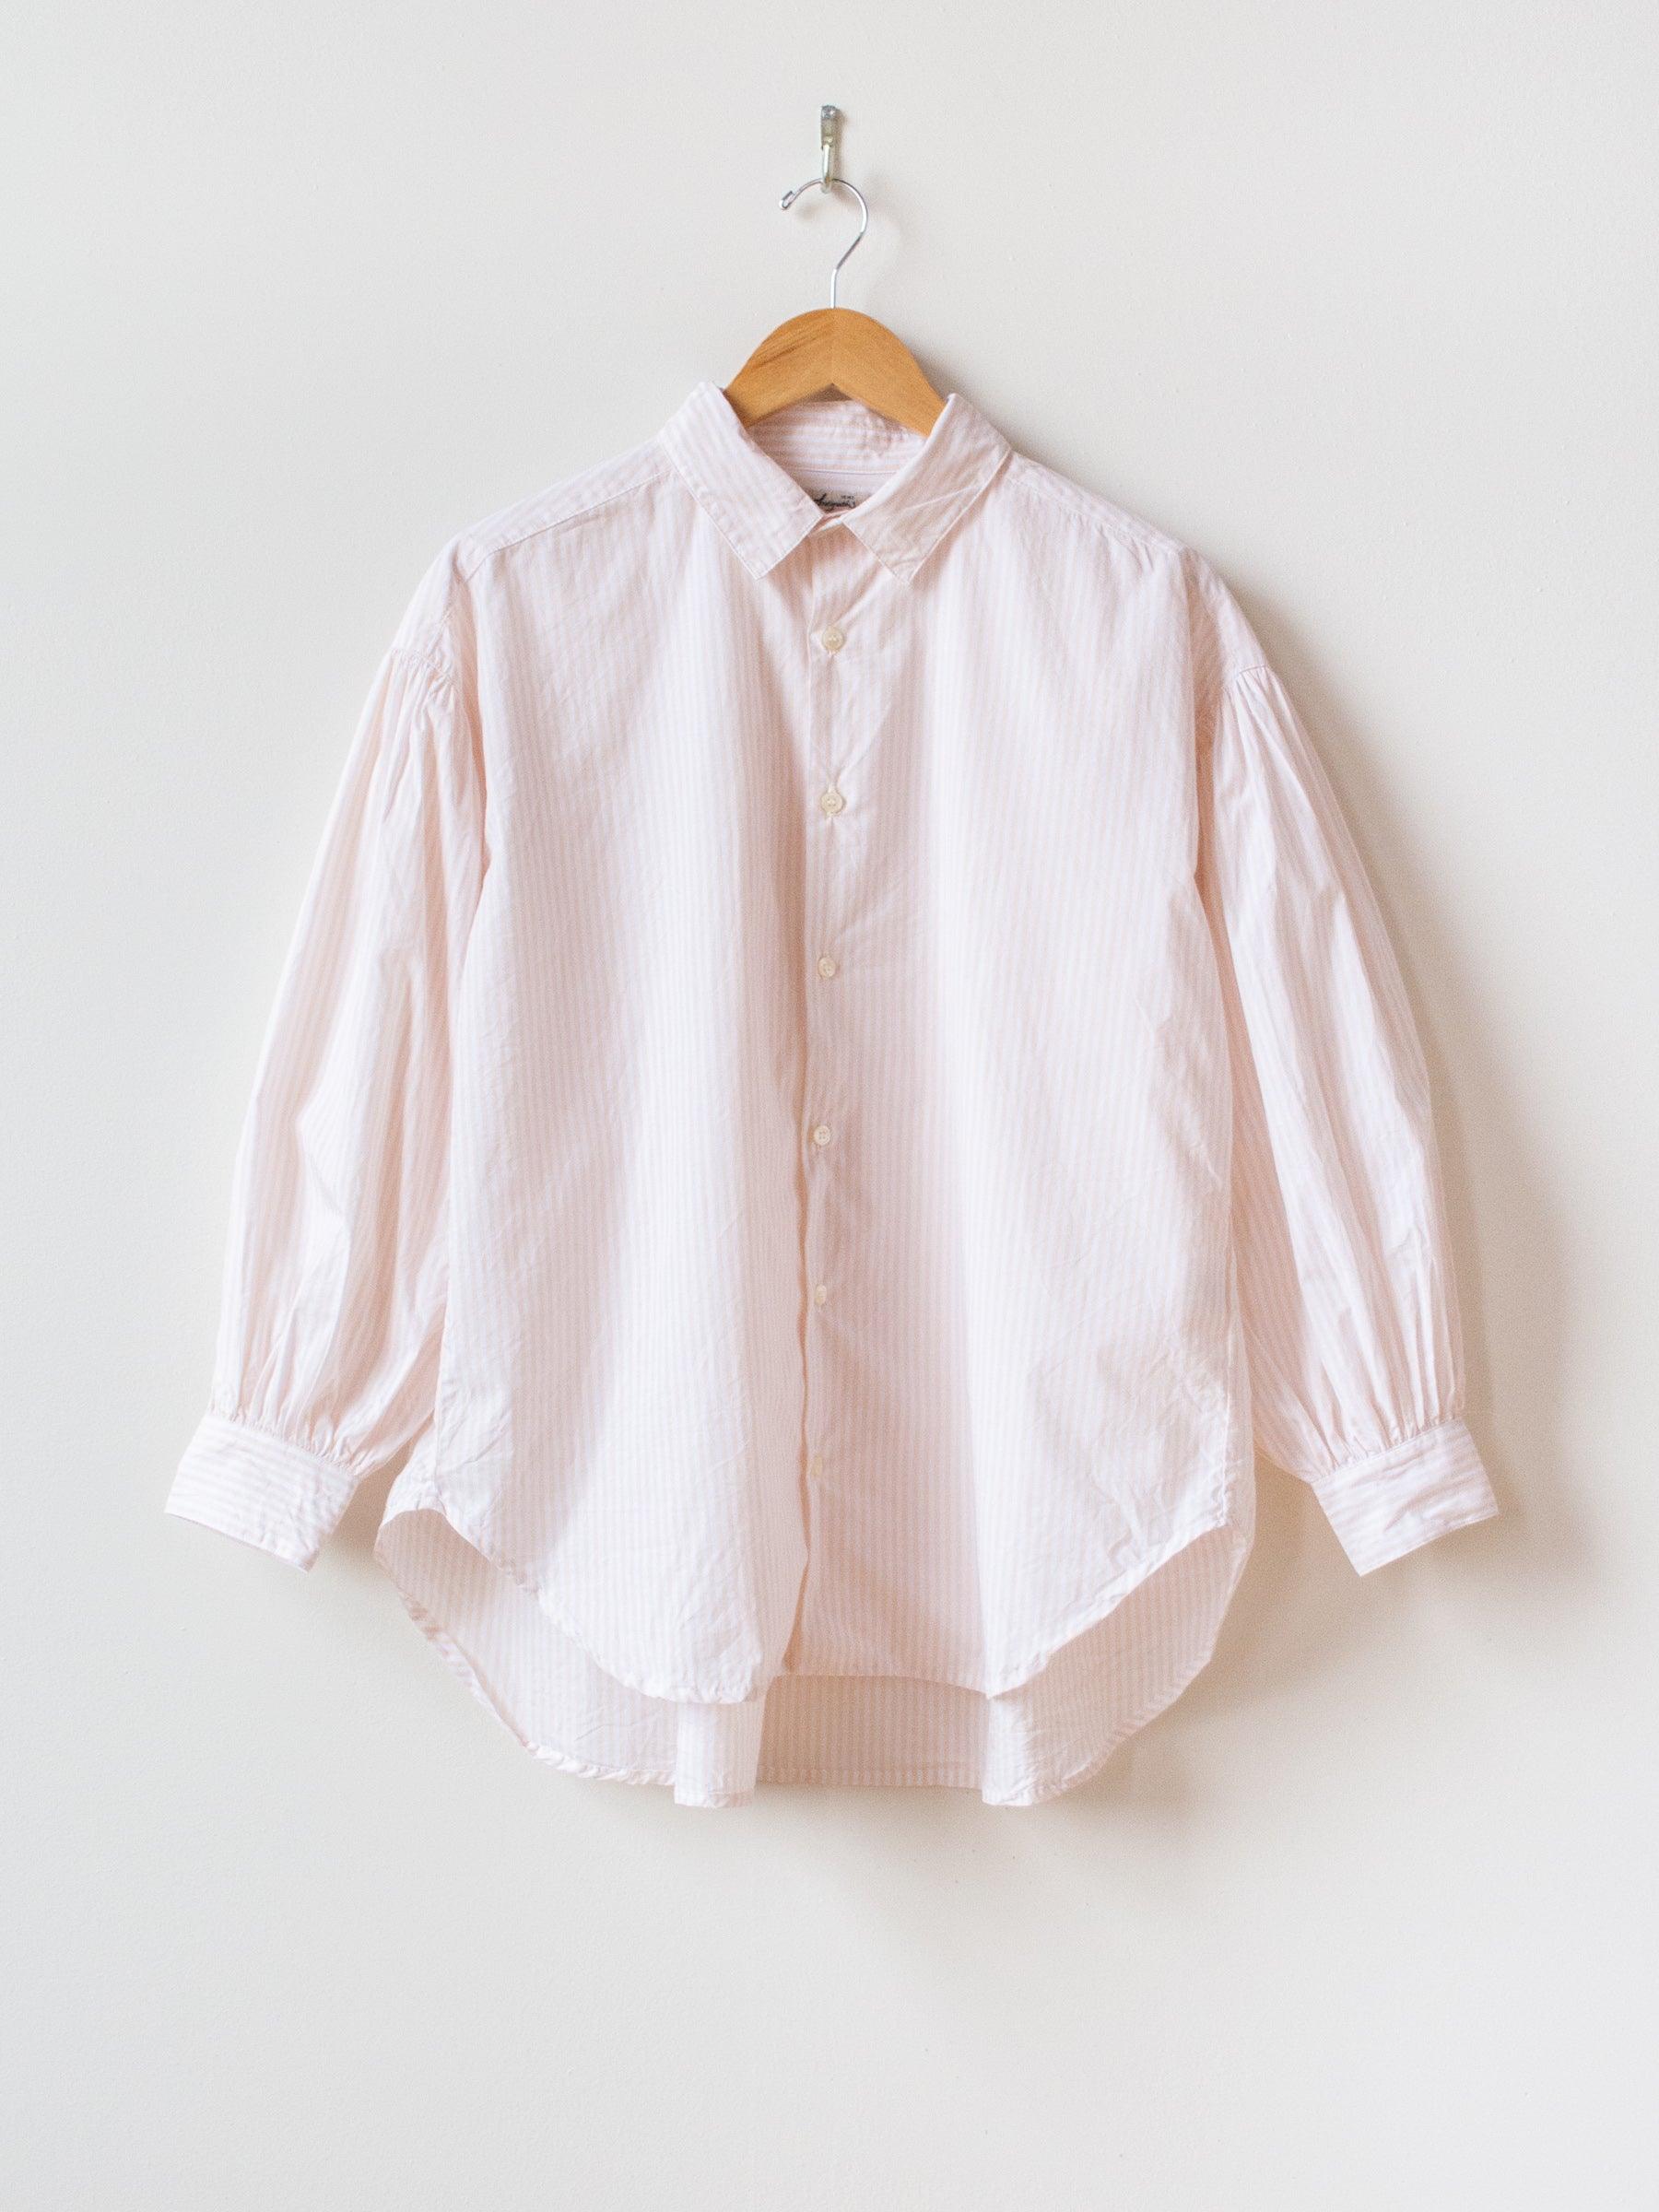 Namu Shop - Ichi Antiquites Typewriter Stripe Shirt - White x Pink